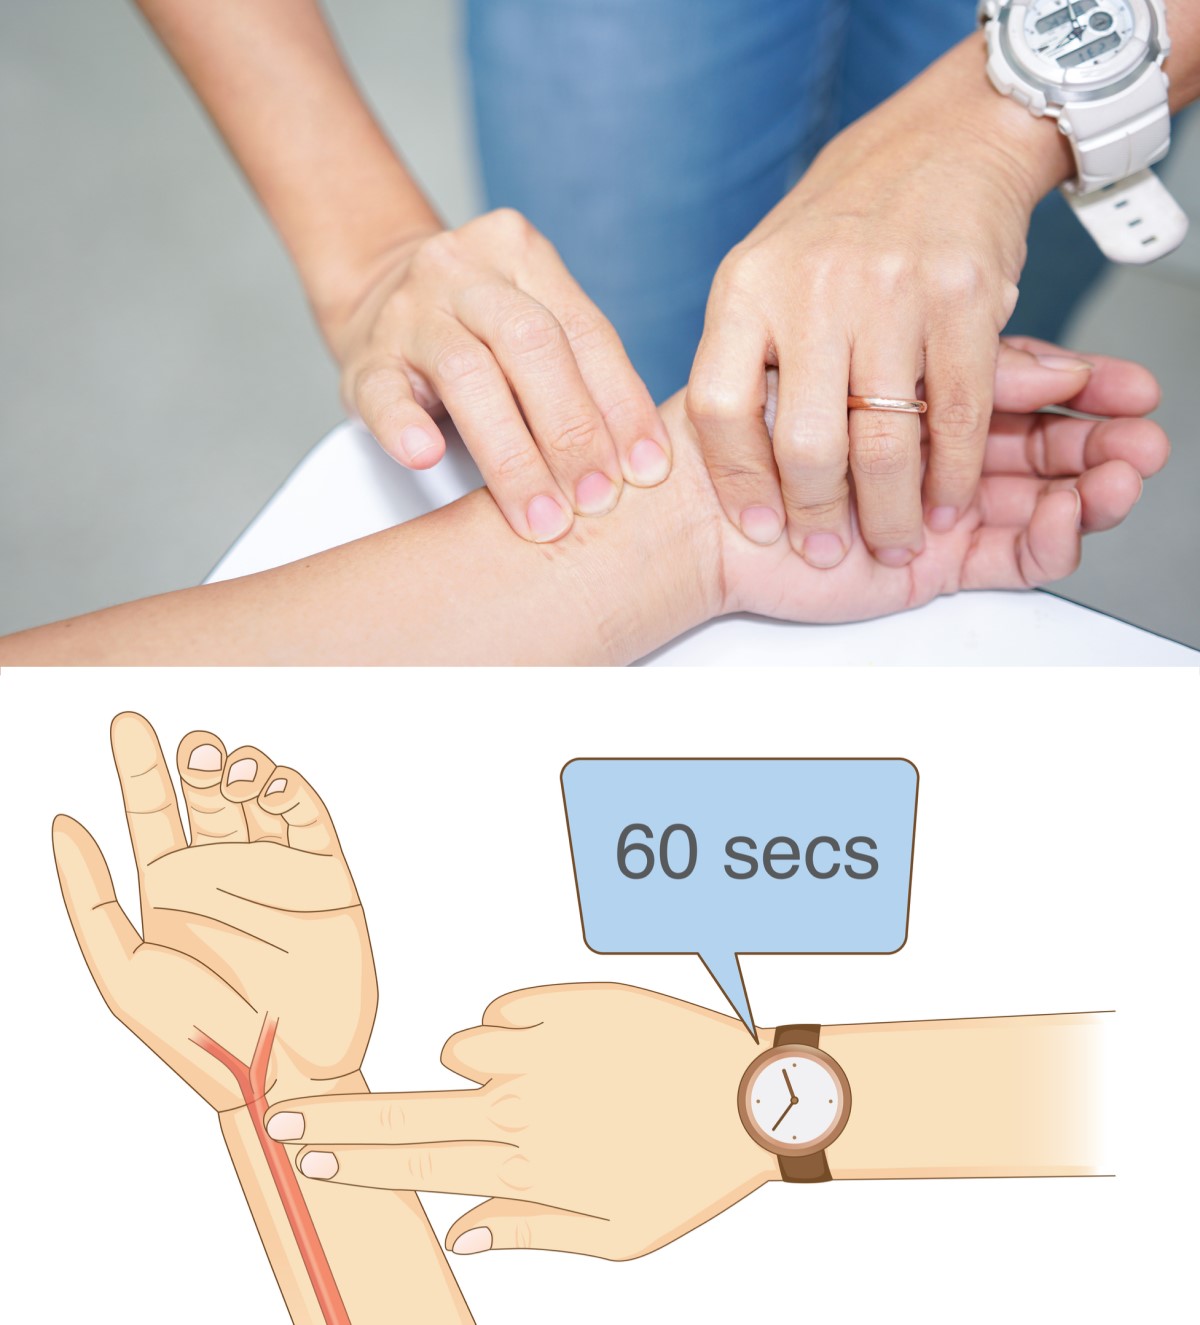 Merenje - opipavanje pulsa, puls na zglobu sa tri prsta na unutrašnjoj strani i palcem na zglobu